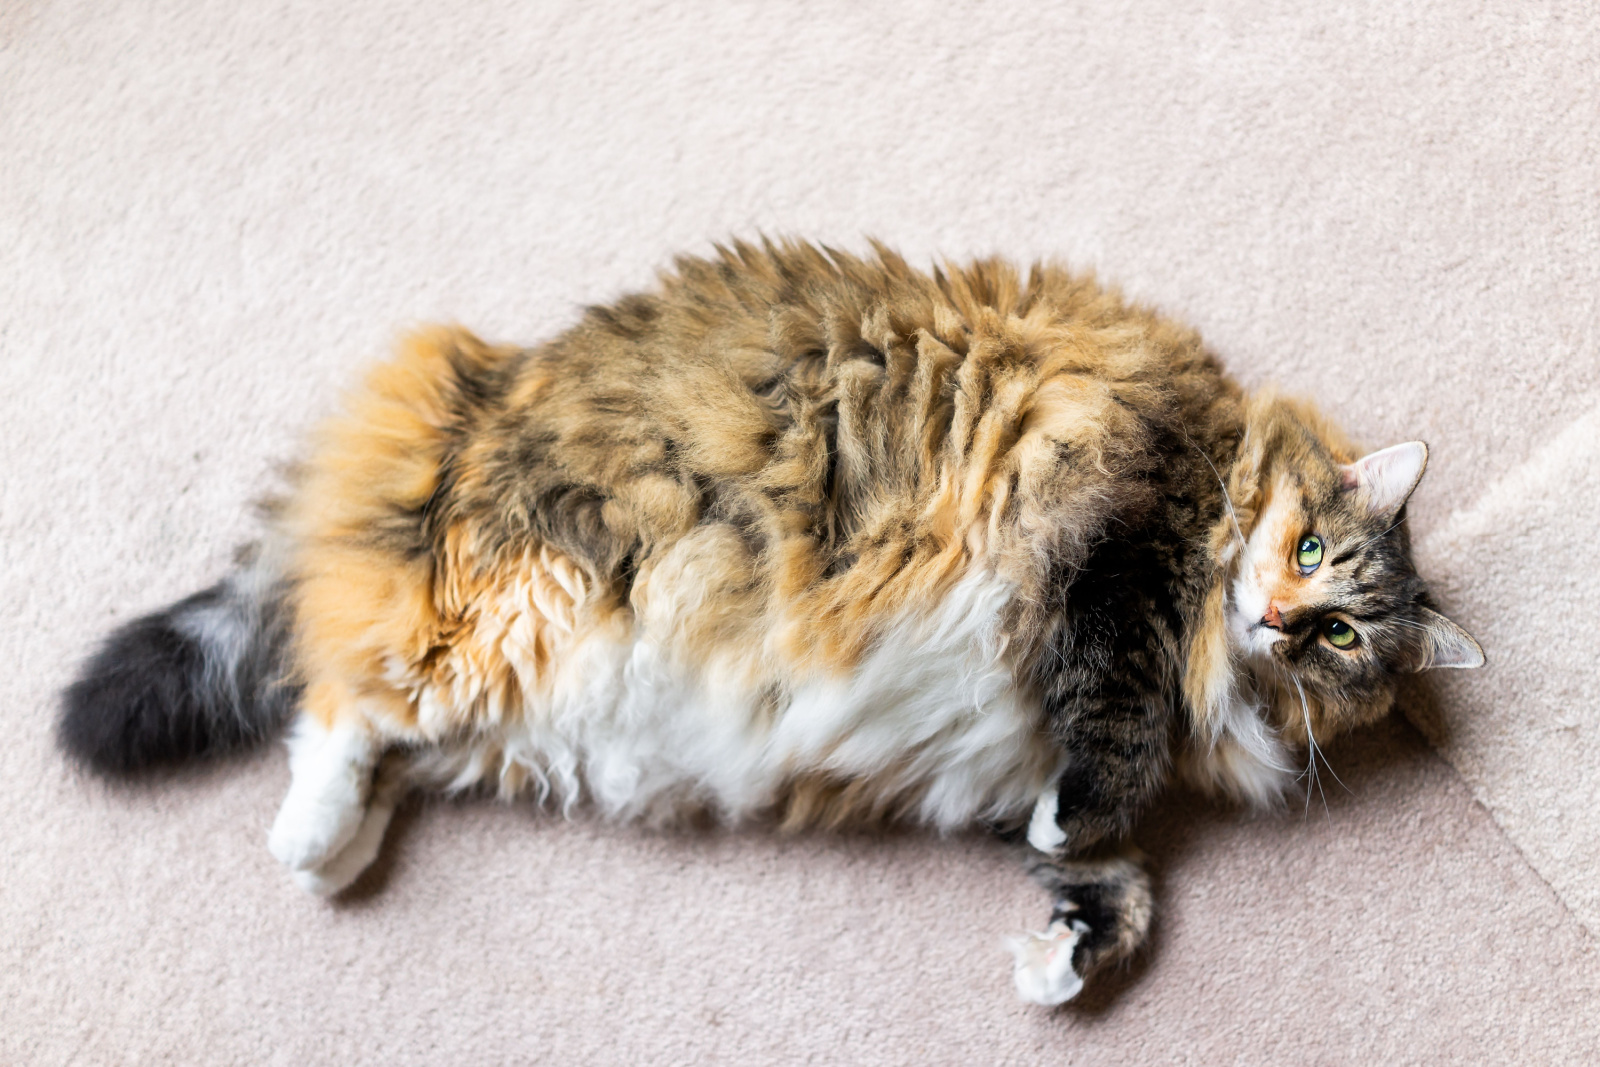 Calico Maine Coon kat liggend op tapijt in kamer omhoog kijkend